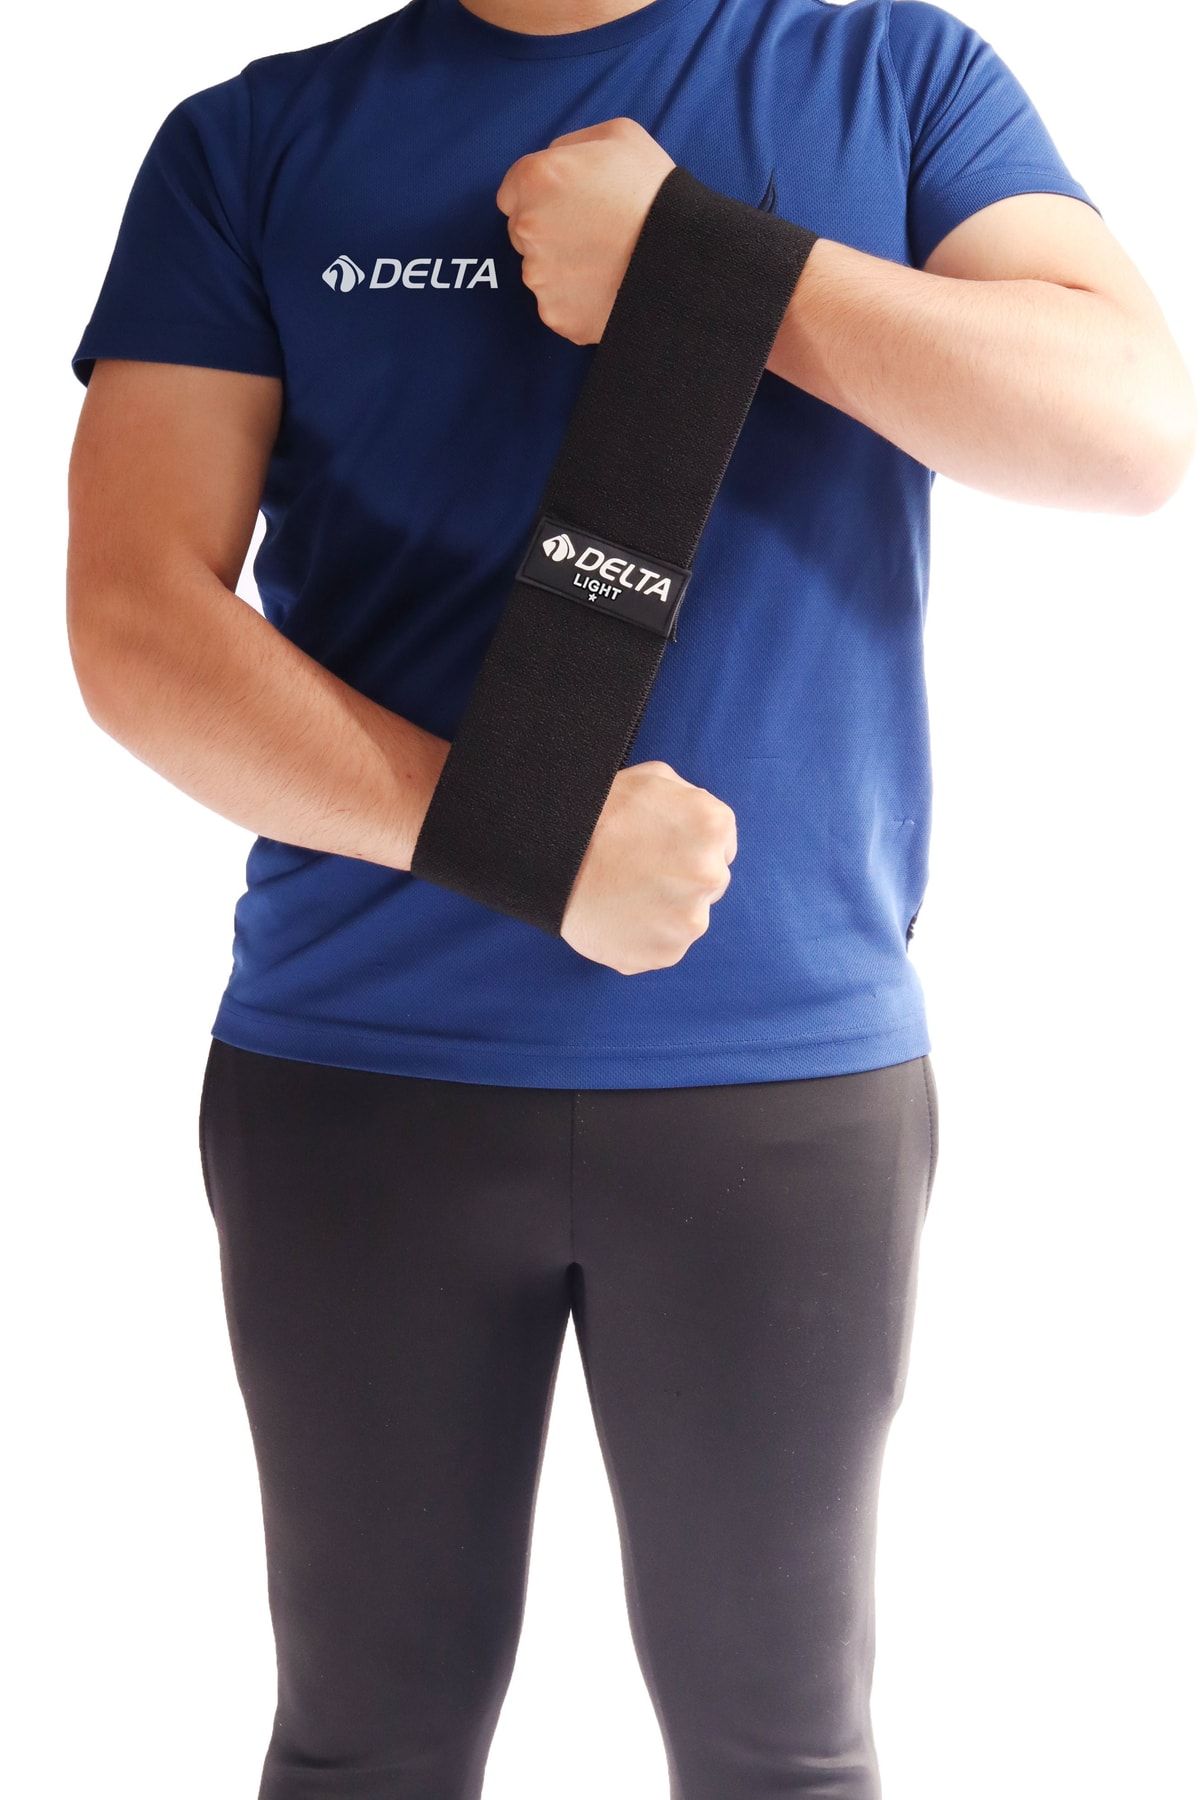 Delta Pilates Bandı Hafif Sert 90 X 7,5 Cm Egzersiz Direnç Lastiği